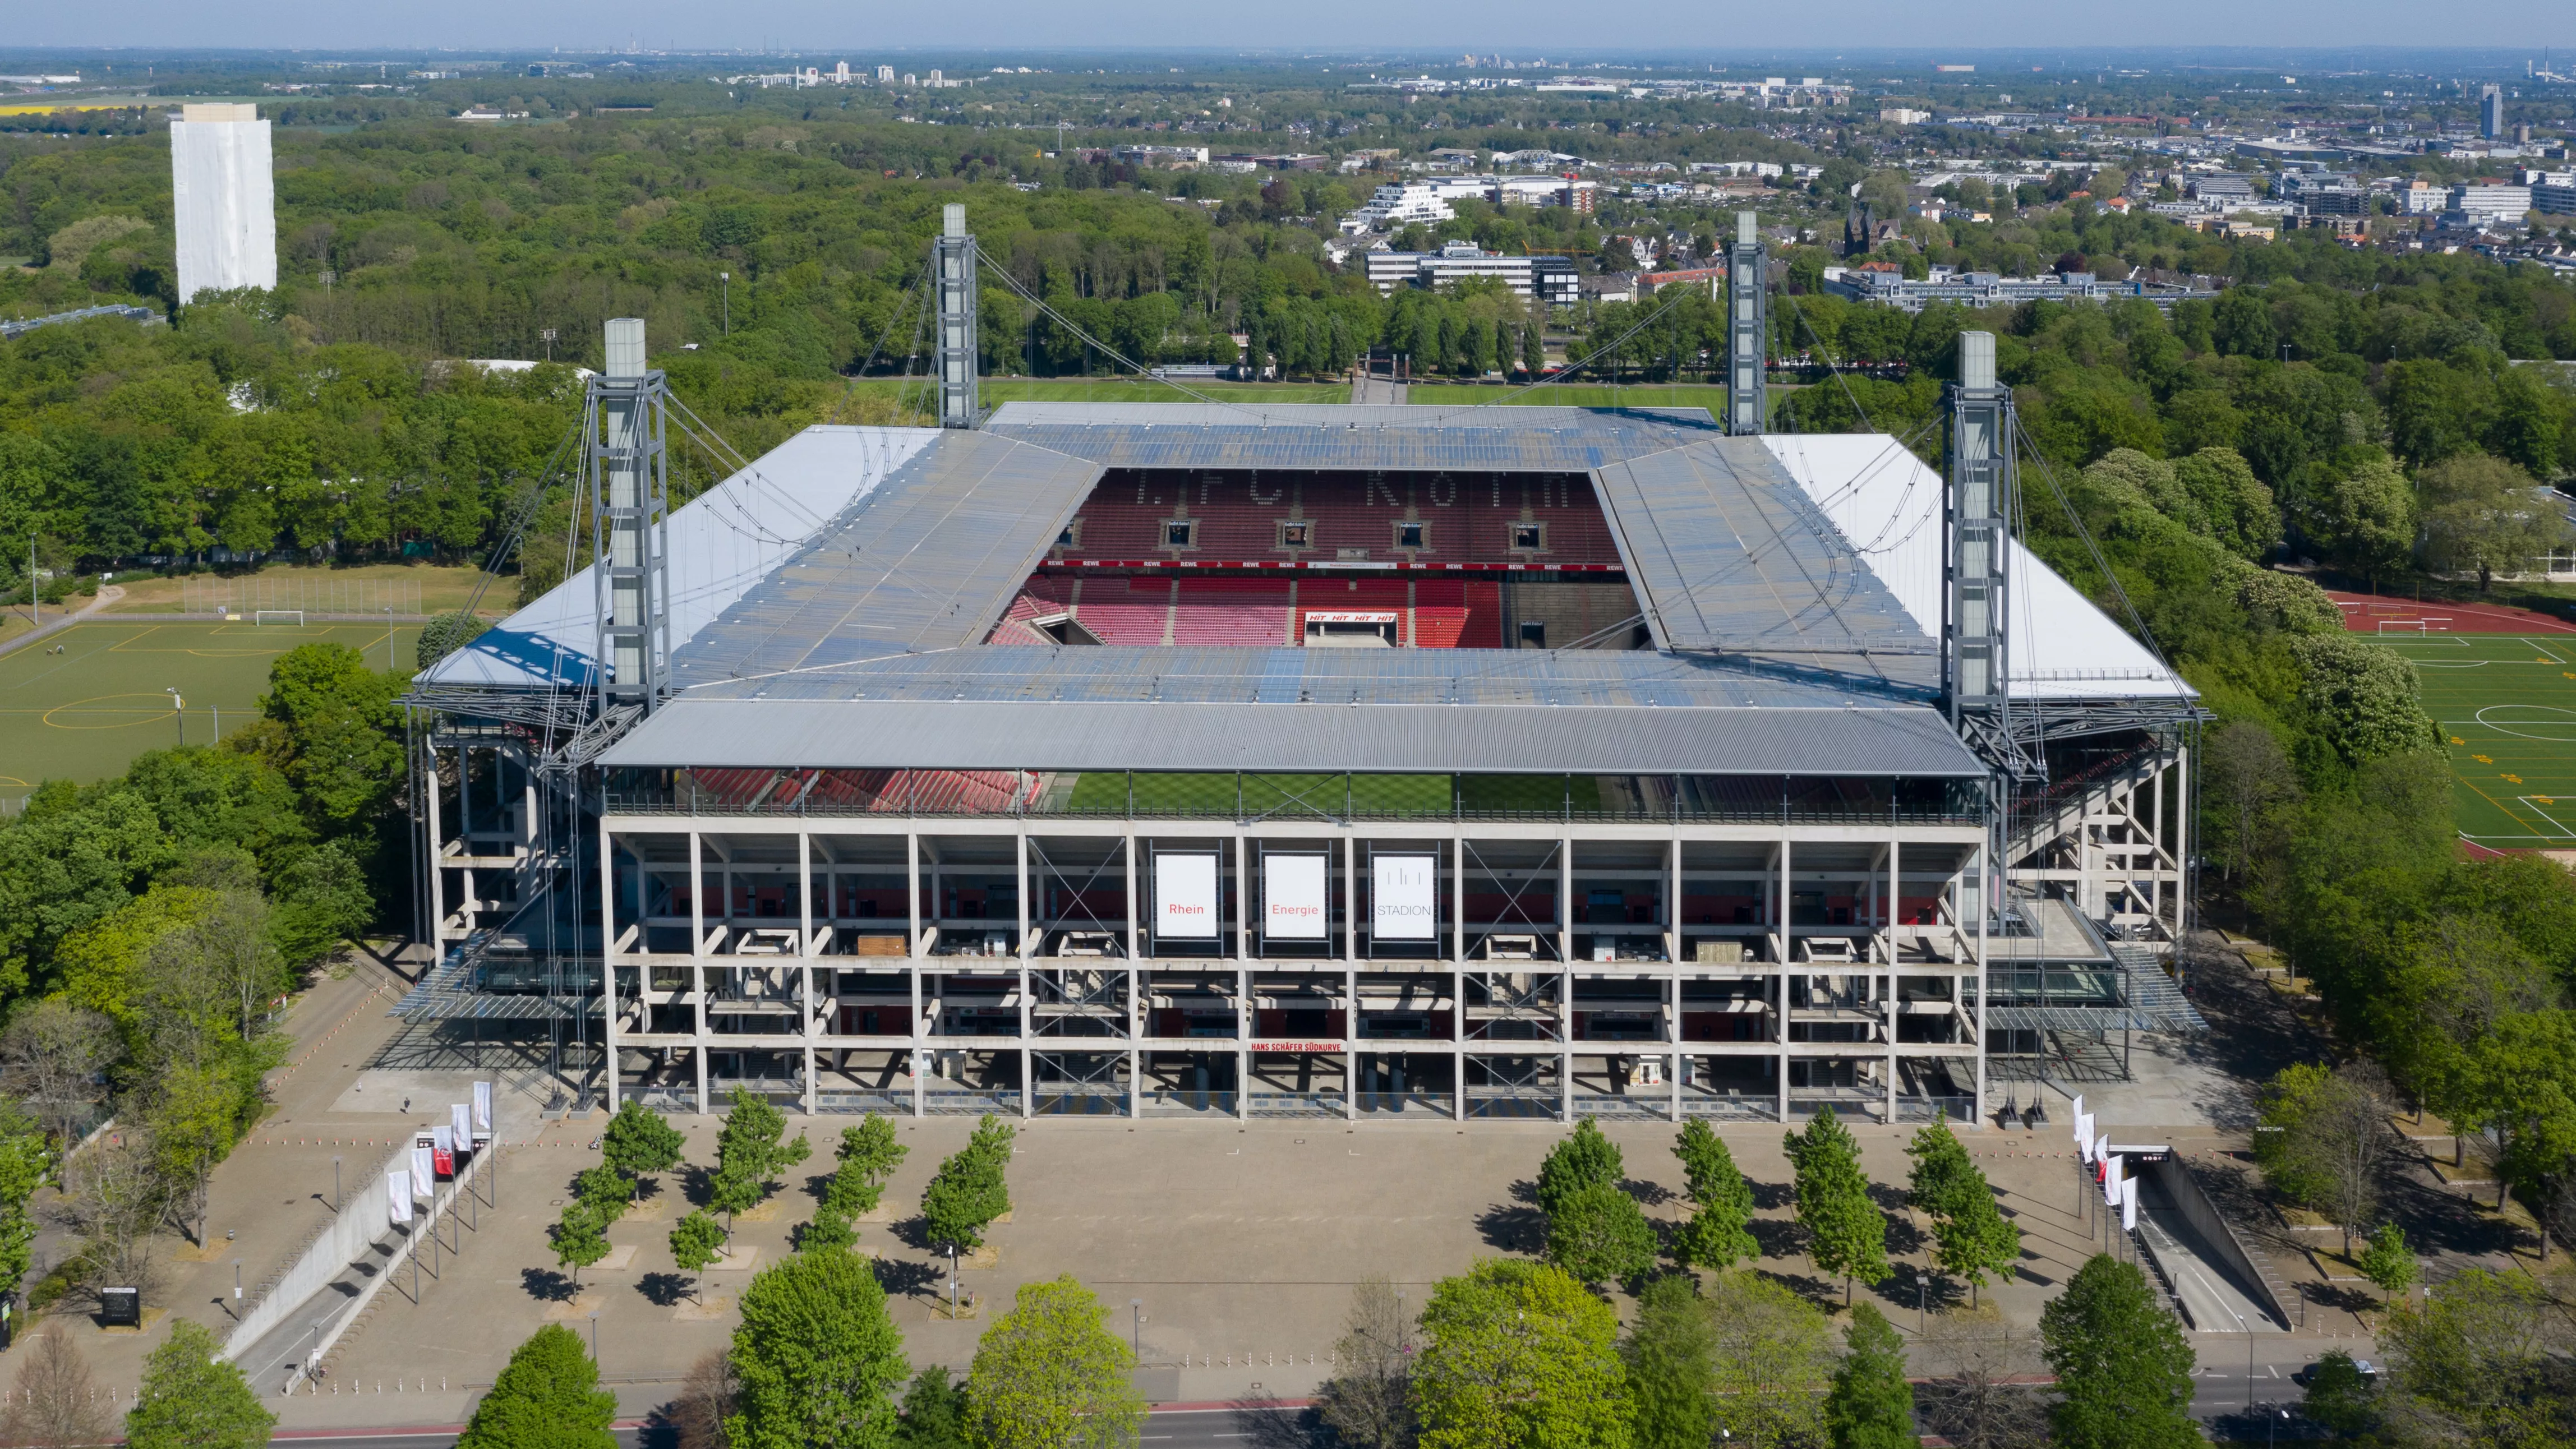 Rhein Energie Stadium in Germany, Europe | Football - Rated 4.2